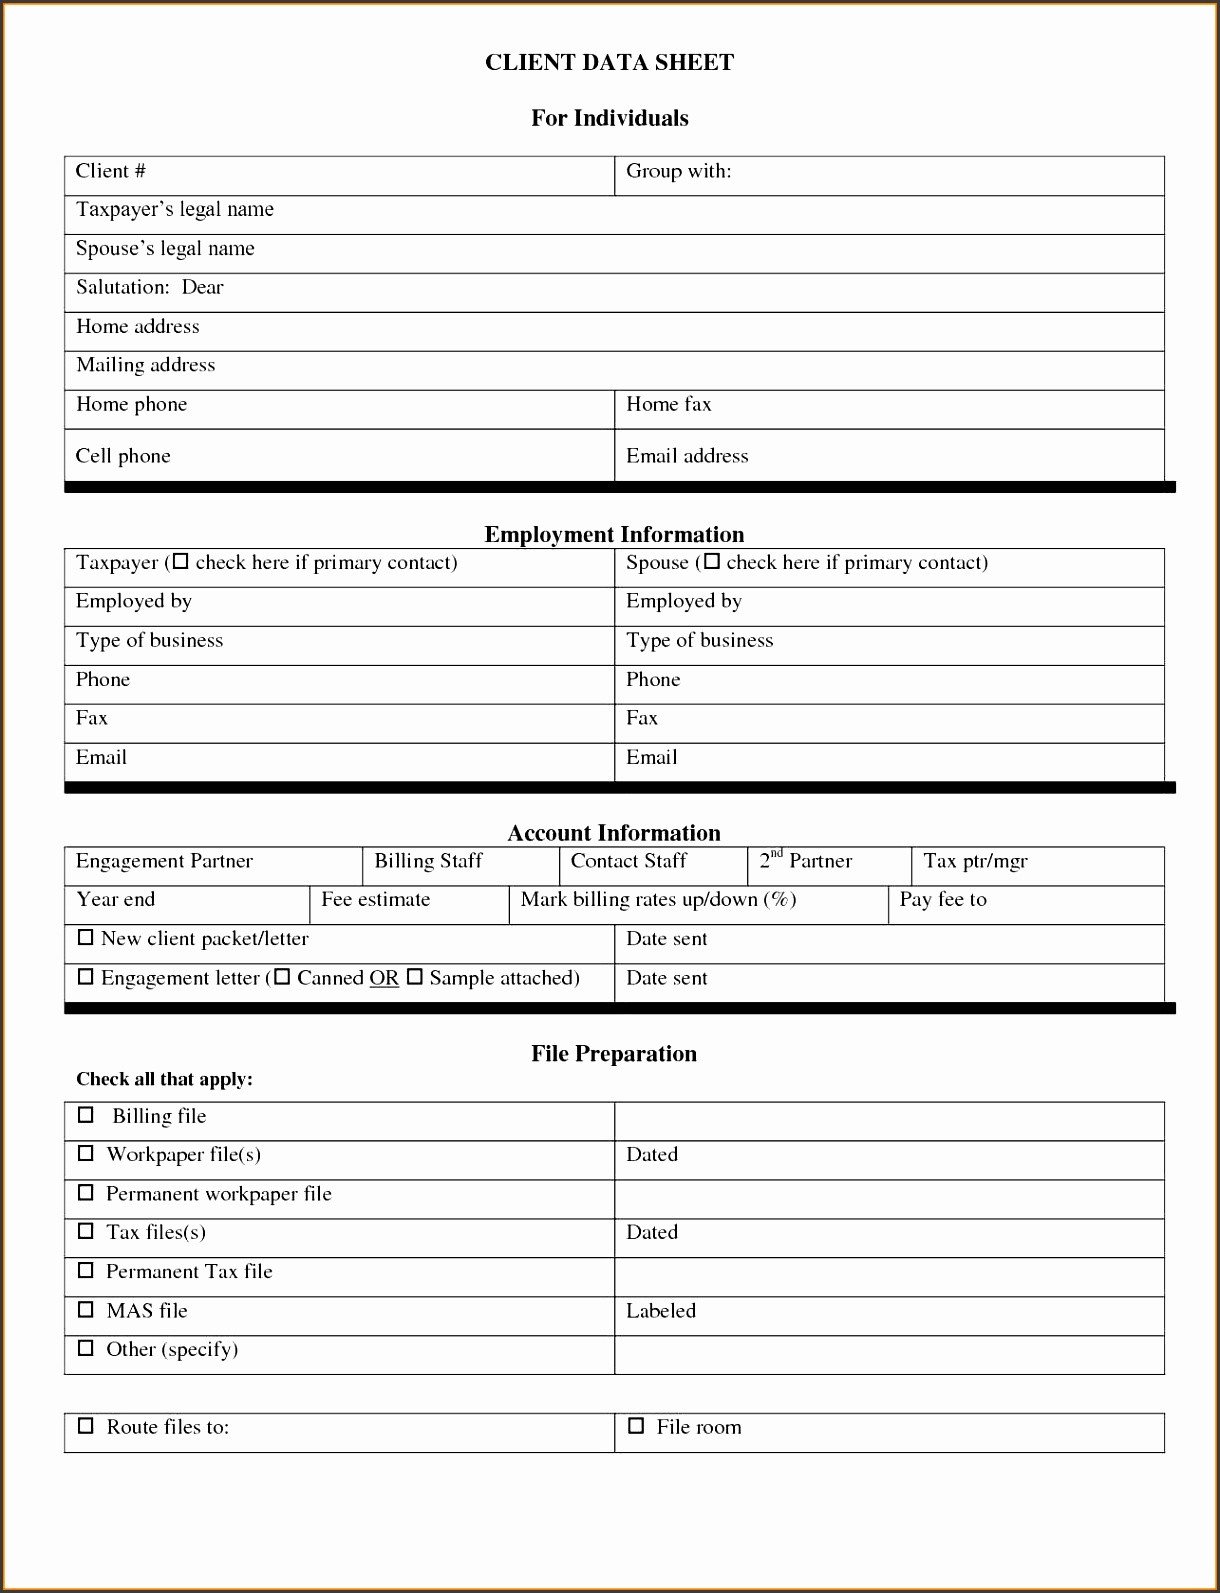 Client Information Sheet Template 5 Customer Information Sheet Template Sampletemplatess